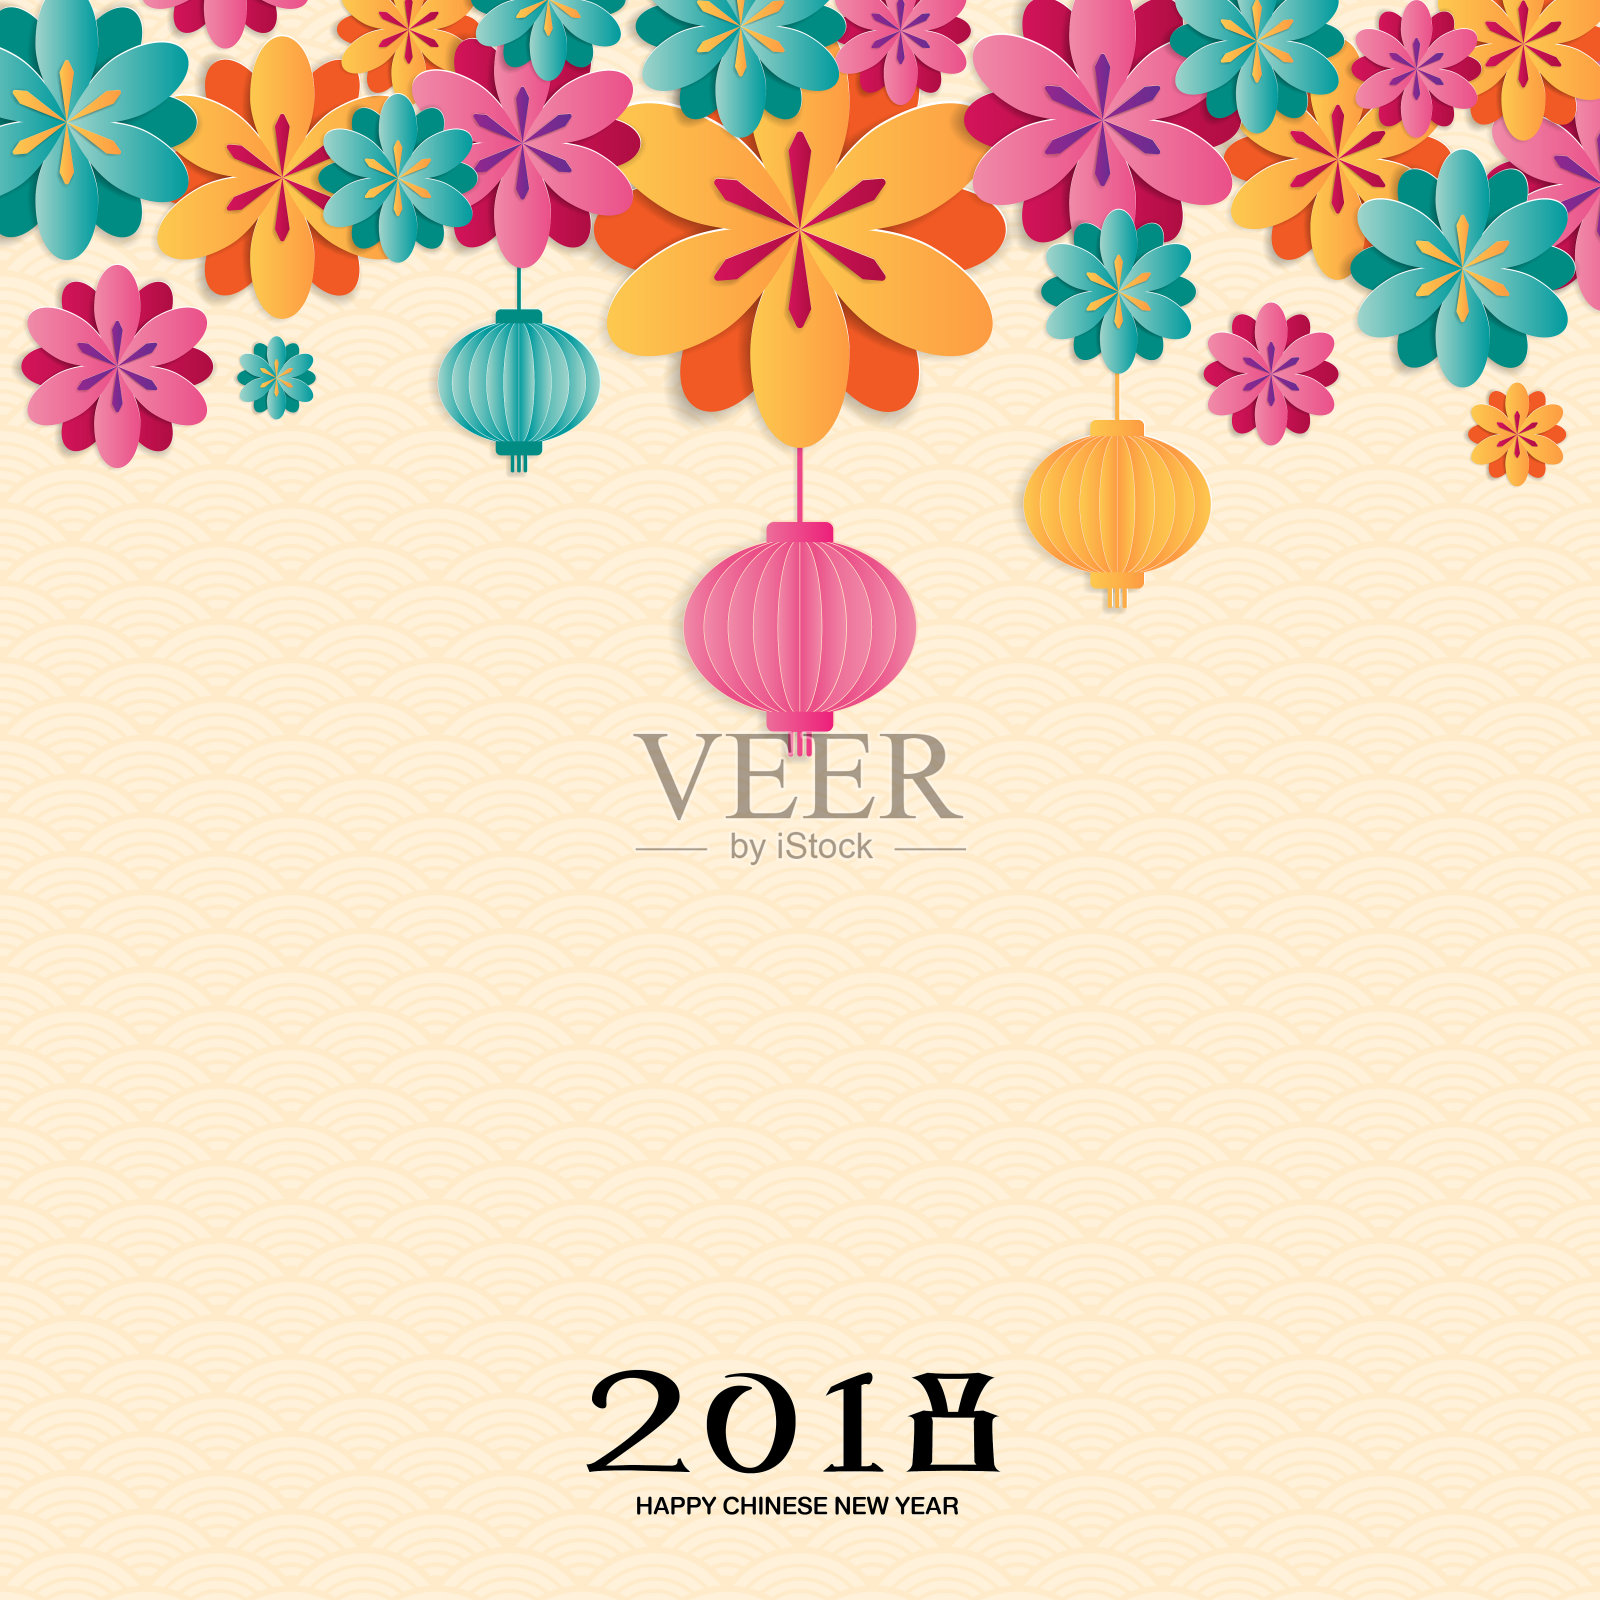 以樱花、灯笼和亚洲传统图案为背景的2018中国新年。纸艺术风格。矢量插图。设计模板素材